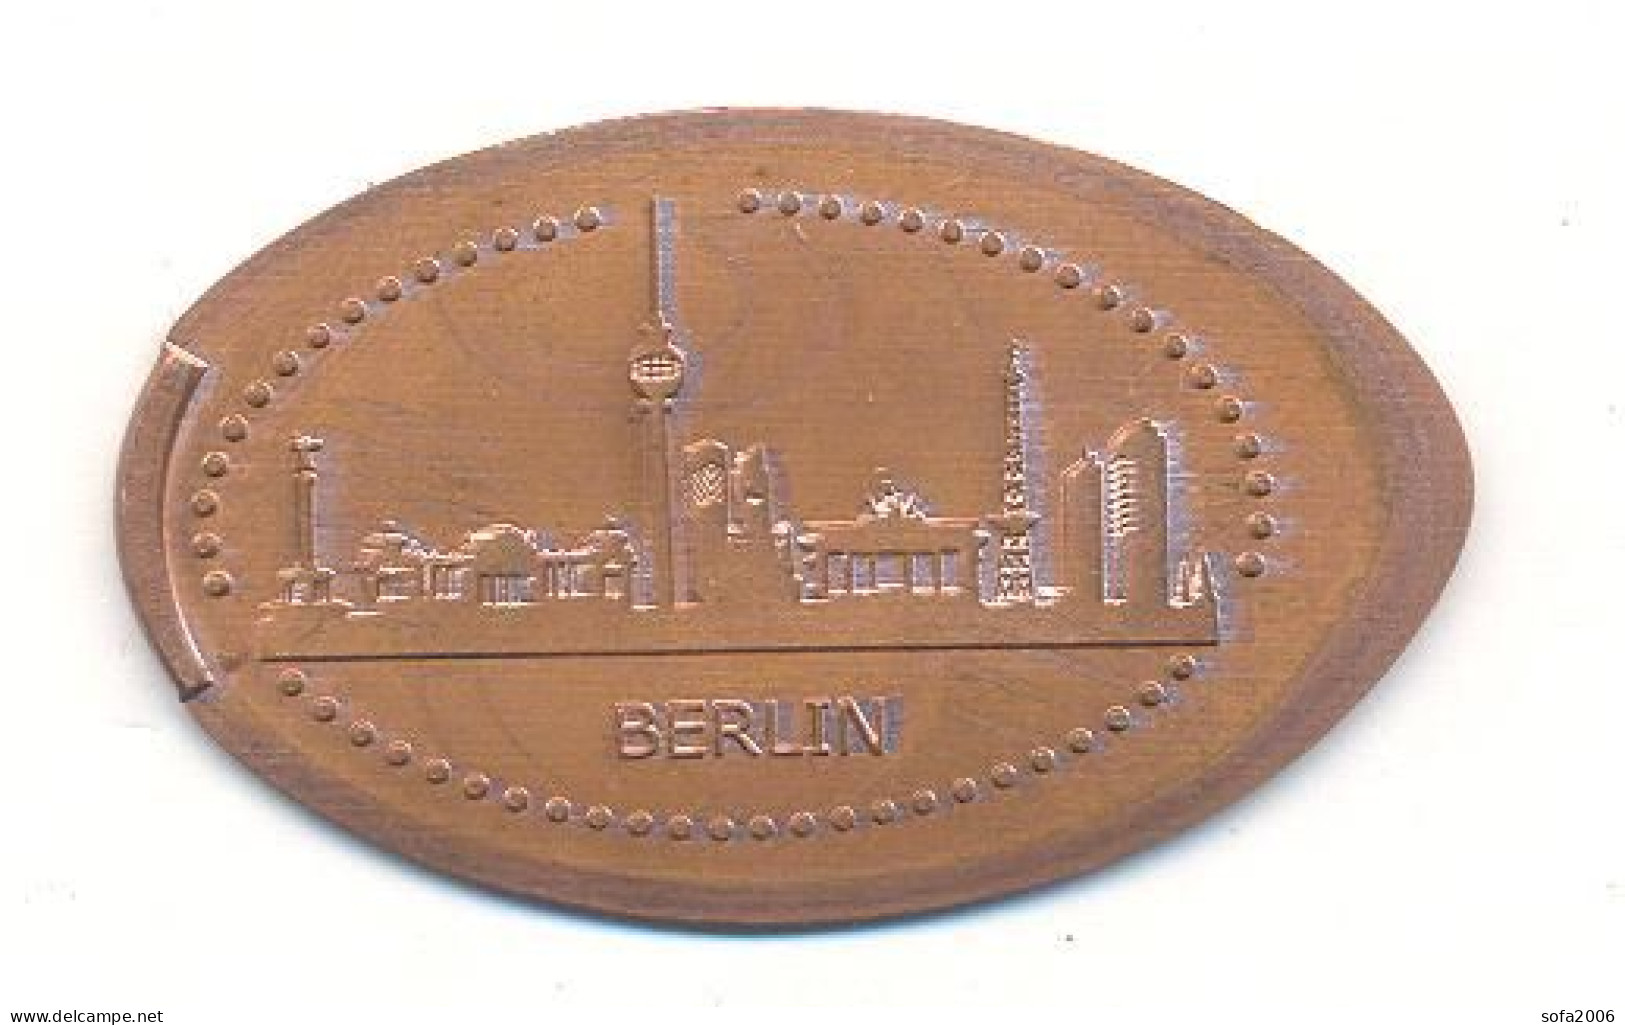 Souvenir Jeton Token Germany-Deutschland Berlin - Pièces écrasées (Elongated Coins)